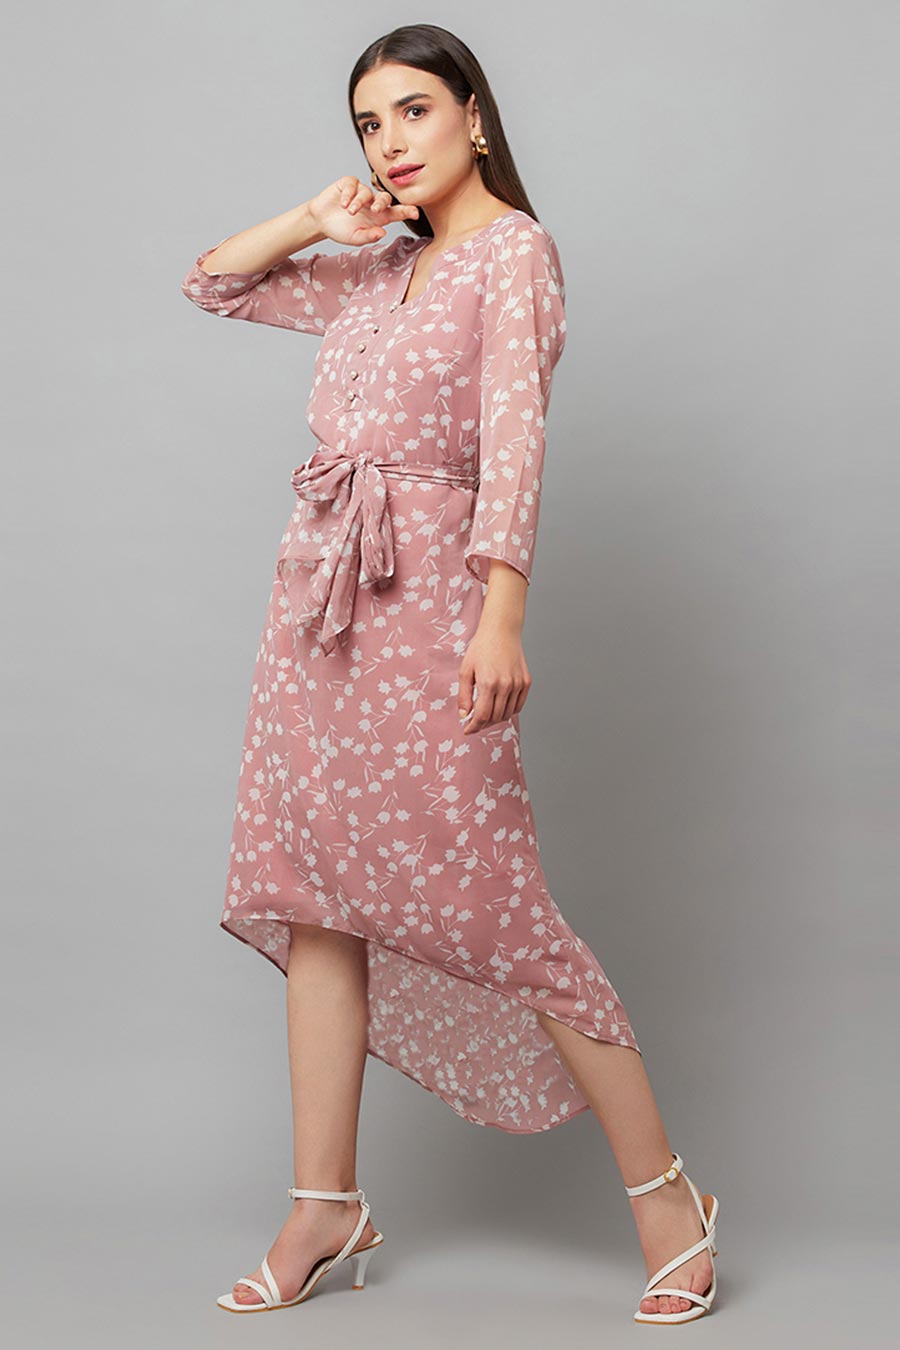 Pink Asymmetric Dress